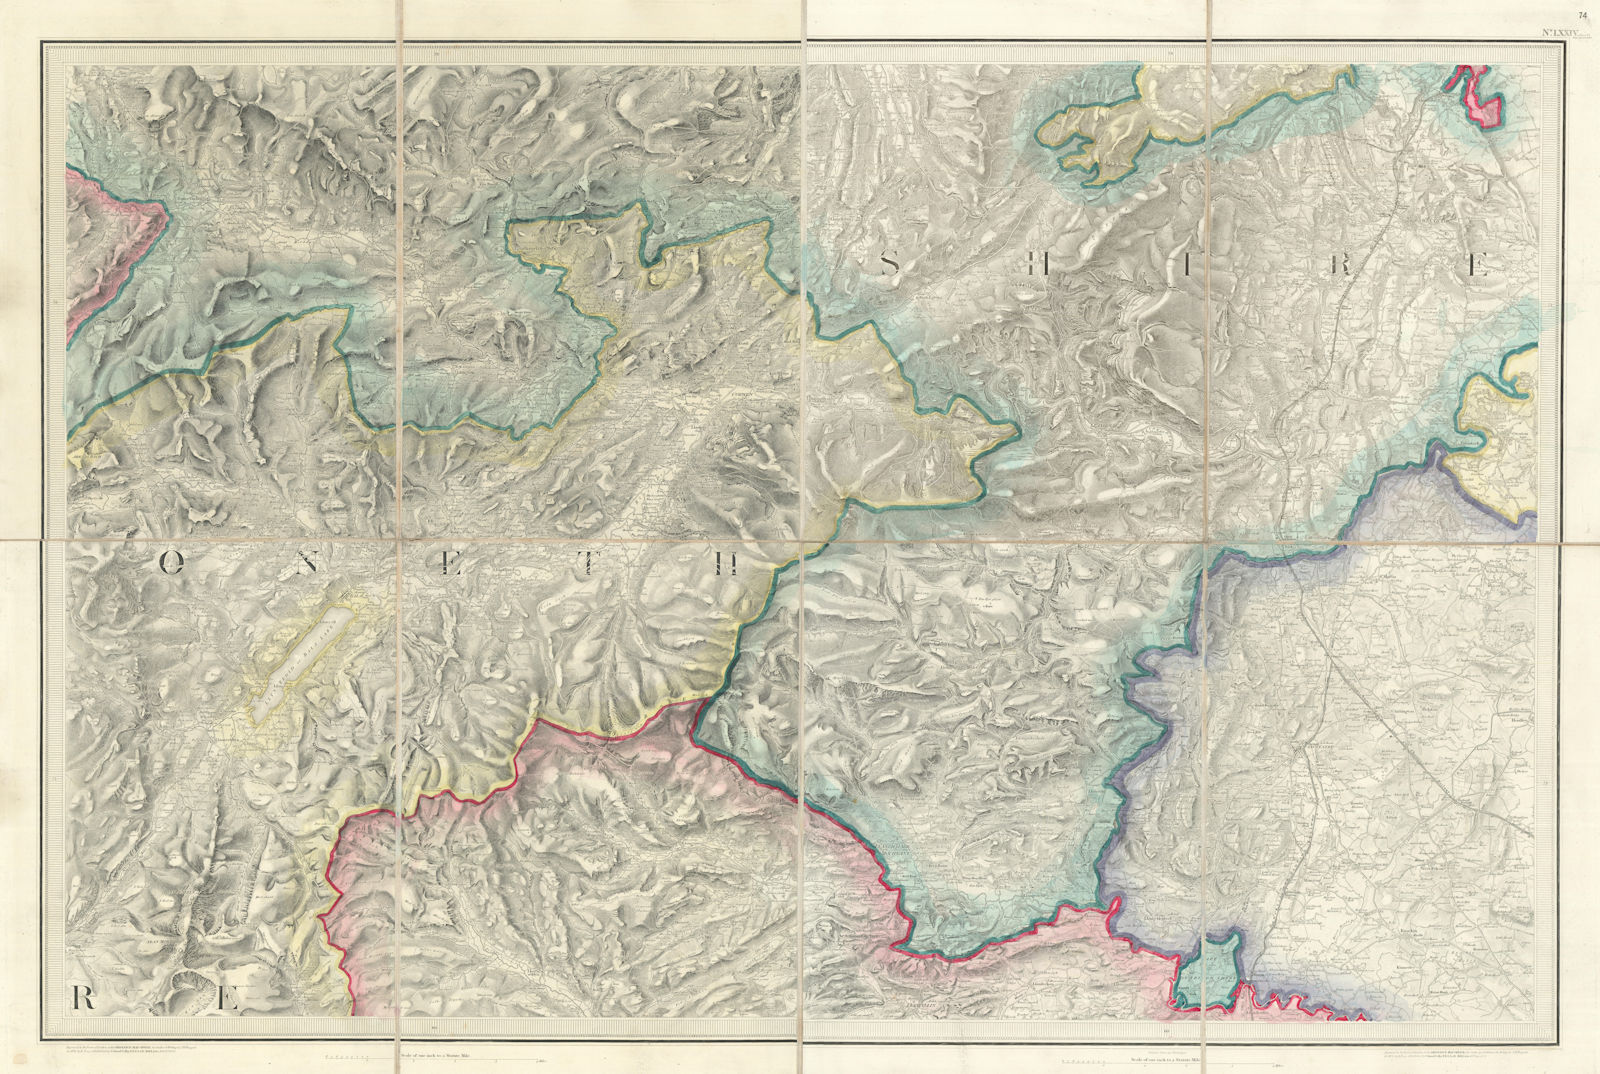 OS #74 Dee Valley, Denbigh Moors & Clwydian Range. Llangollen Wrexham 1838 map